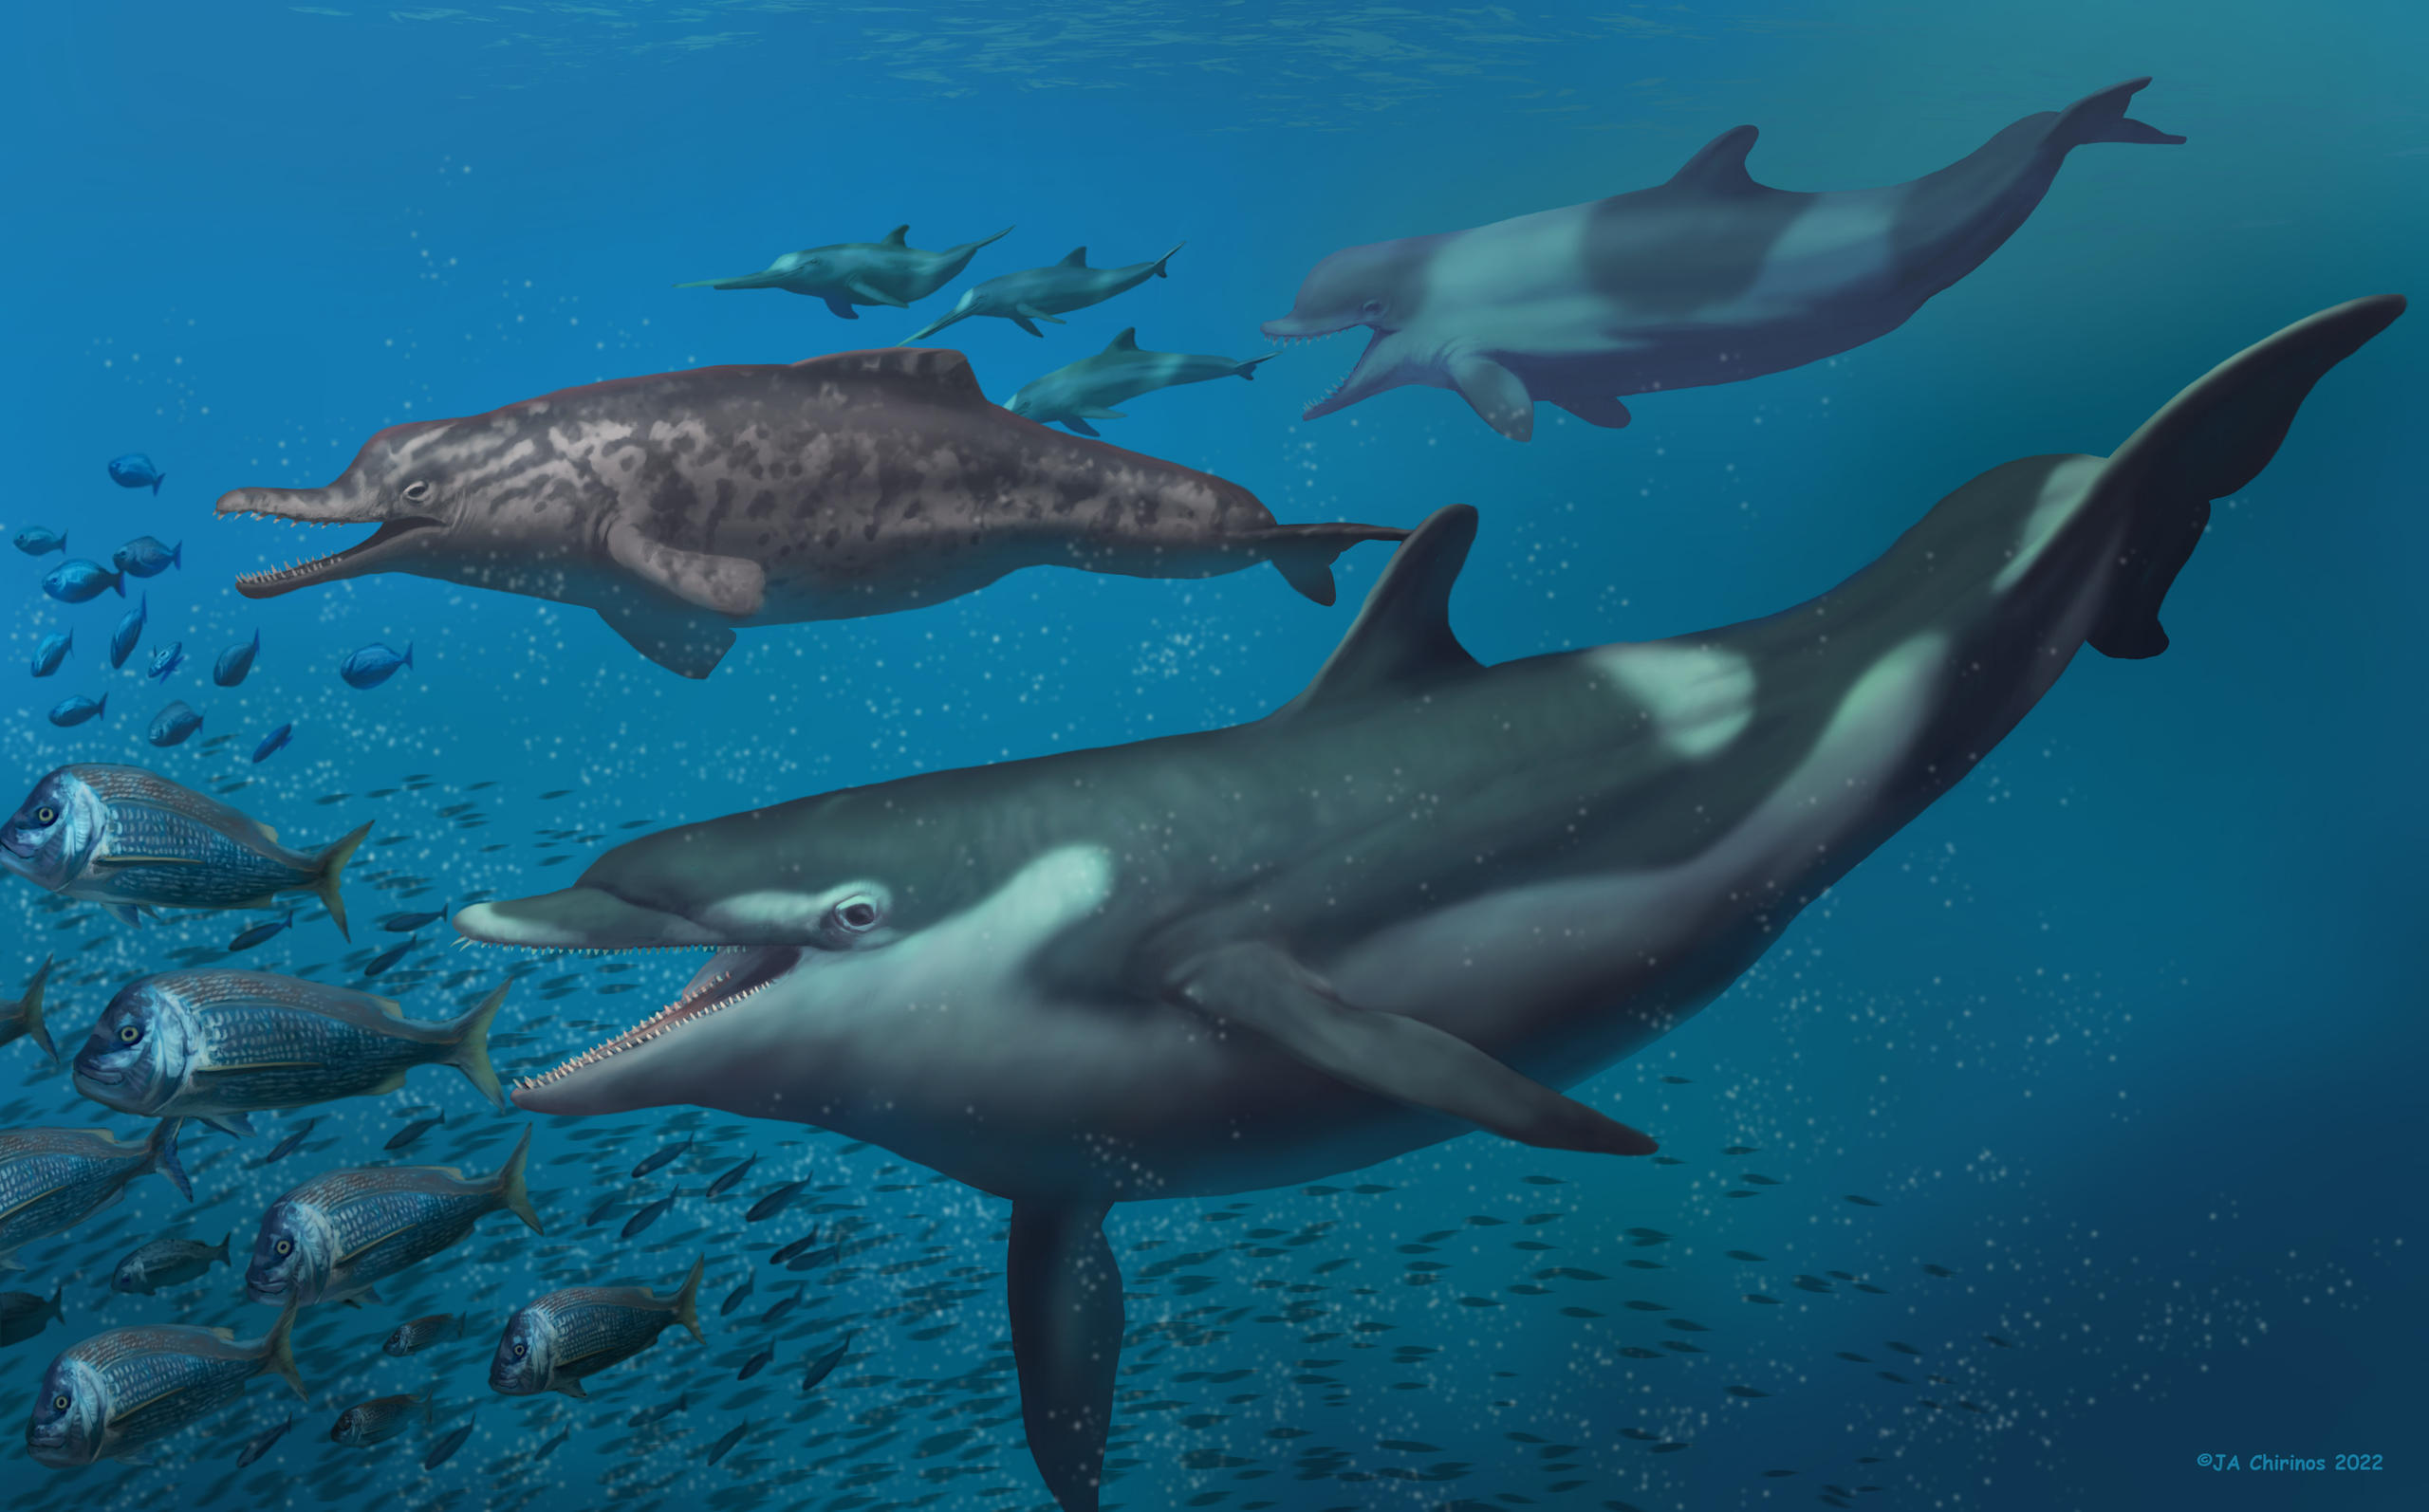 Representação artística dos golfinhos pré-históricos nadando no oceano